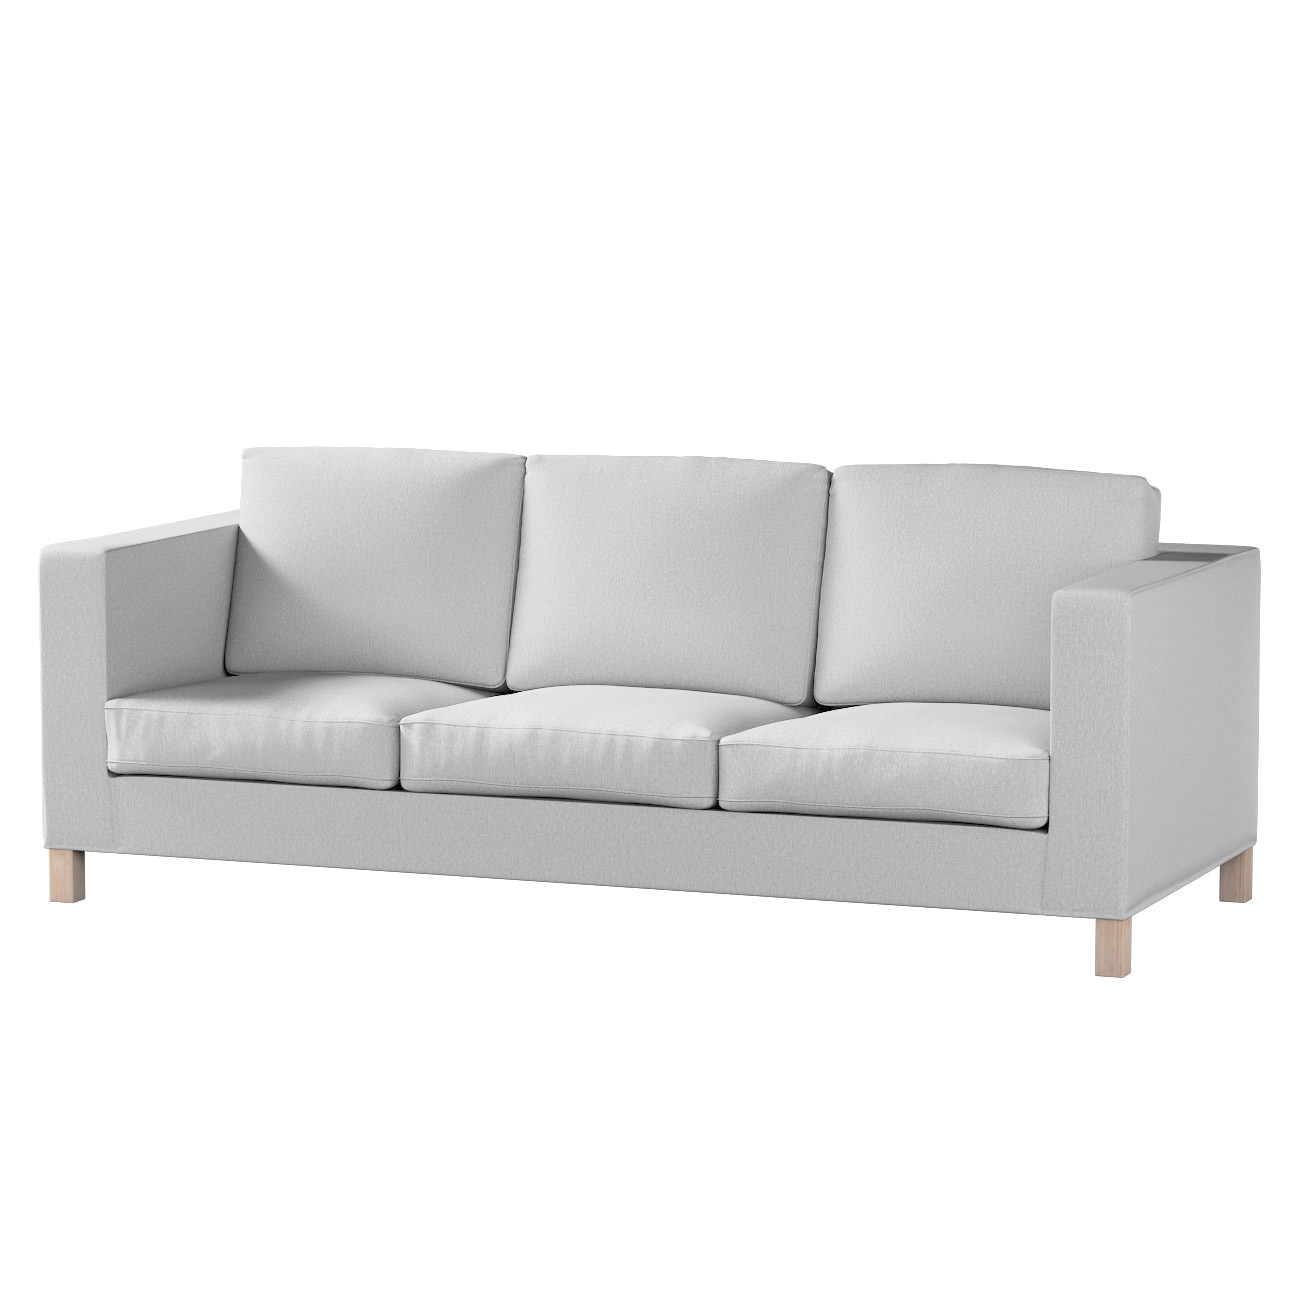 Bezug für Karlanda 3-Sitzer Sofa nicht ausklappbar, kurz, szary, Bezug für günstig online kaufen